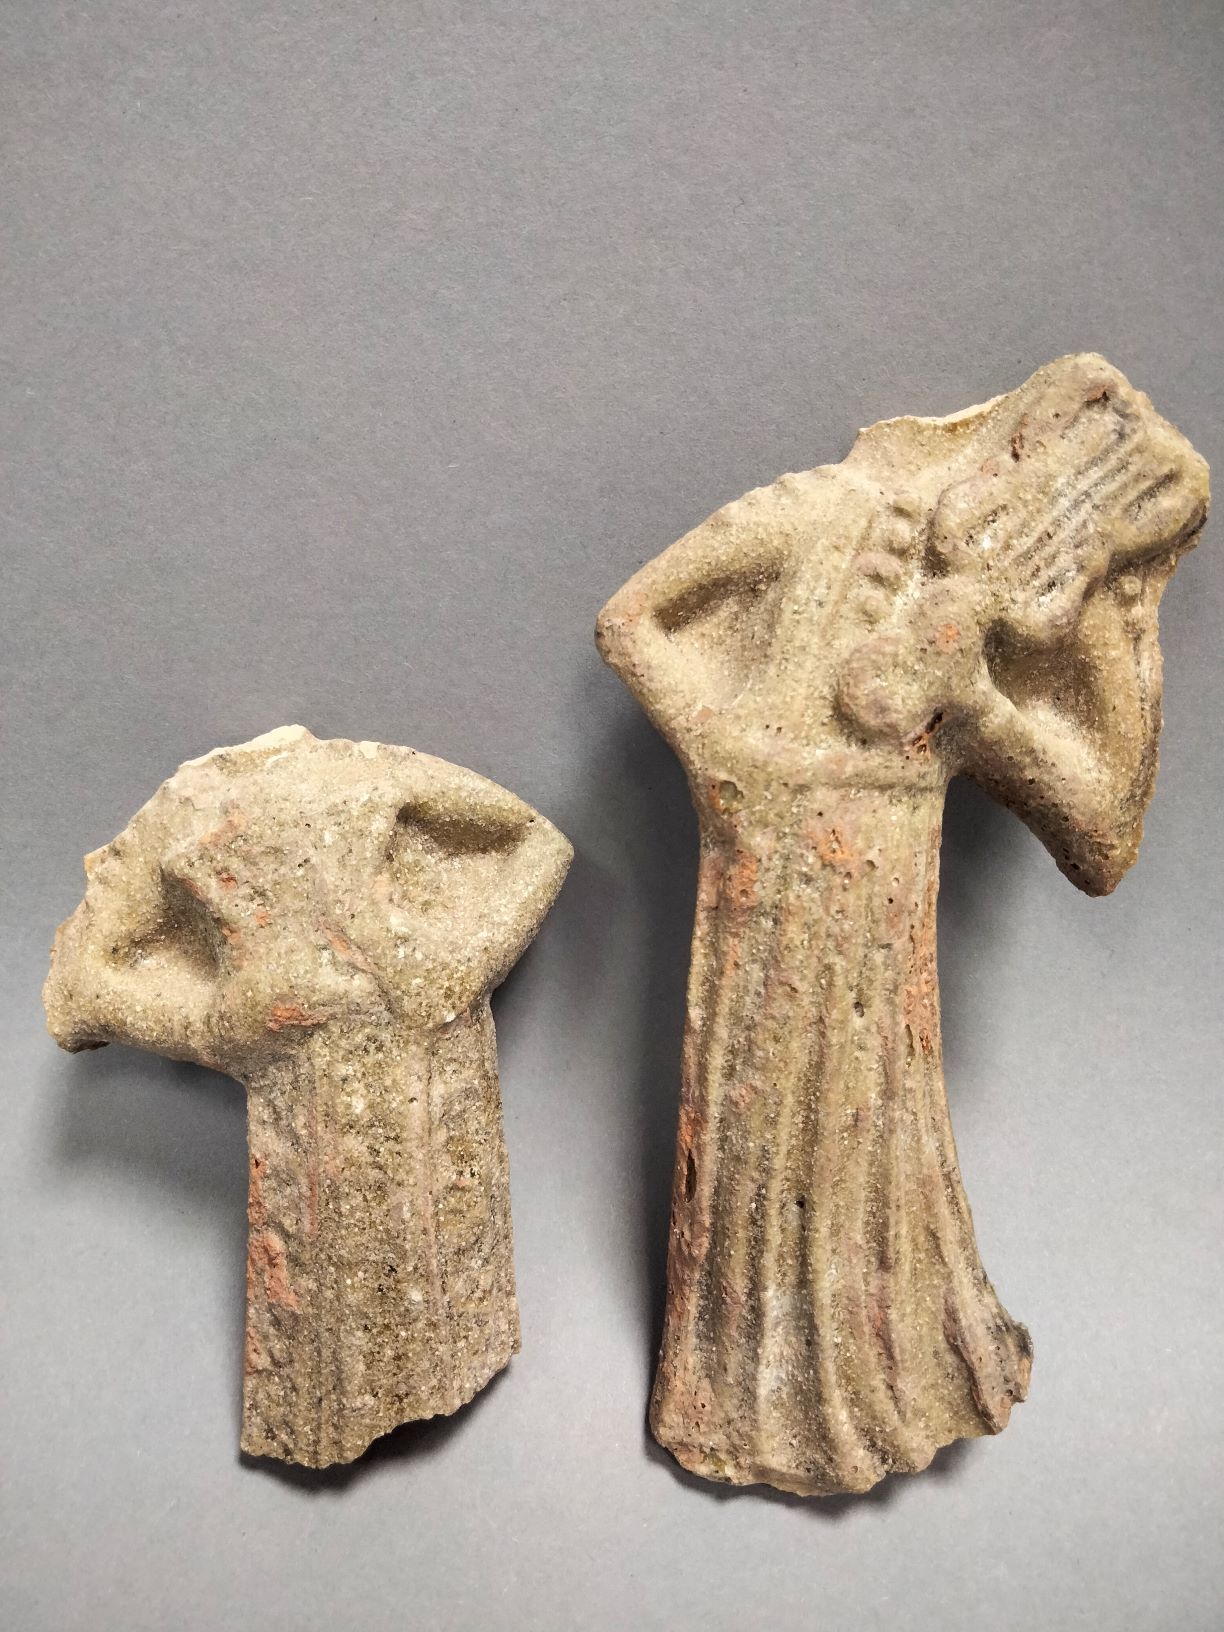 Foto von einer archäologischen Fundgruppe bestehend aus zwei figürlichen Darstellungen. Beiden steinernen Figuren fehlt der Kopf. Leichte Farbreste sind erkennbar.